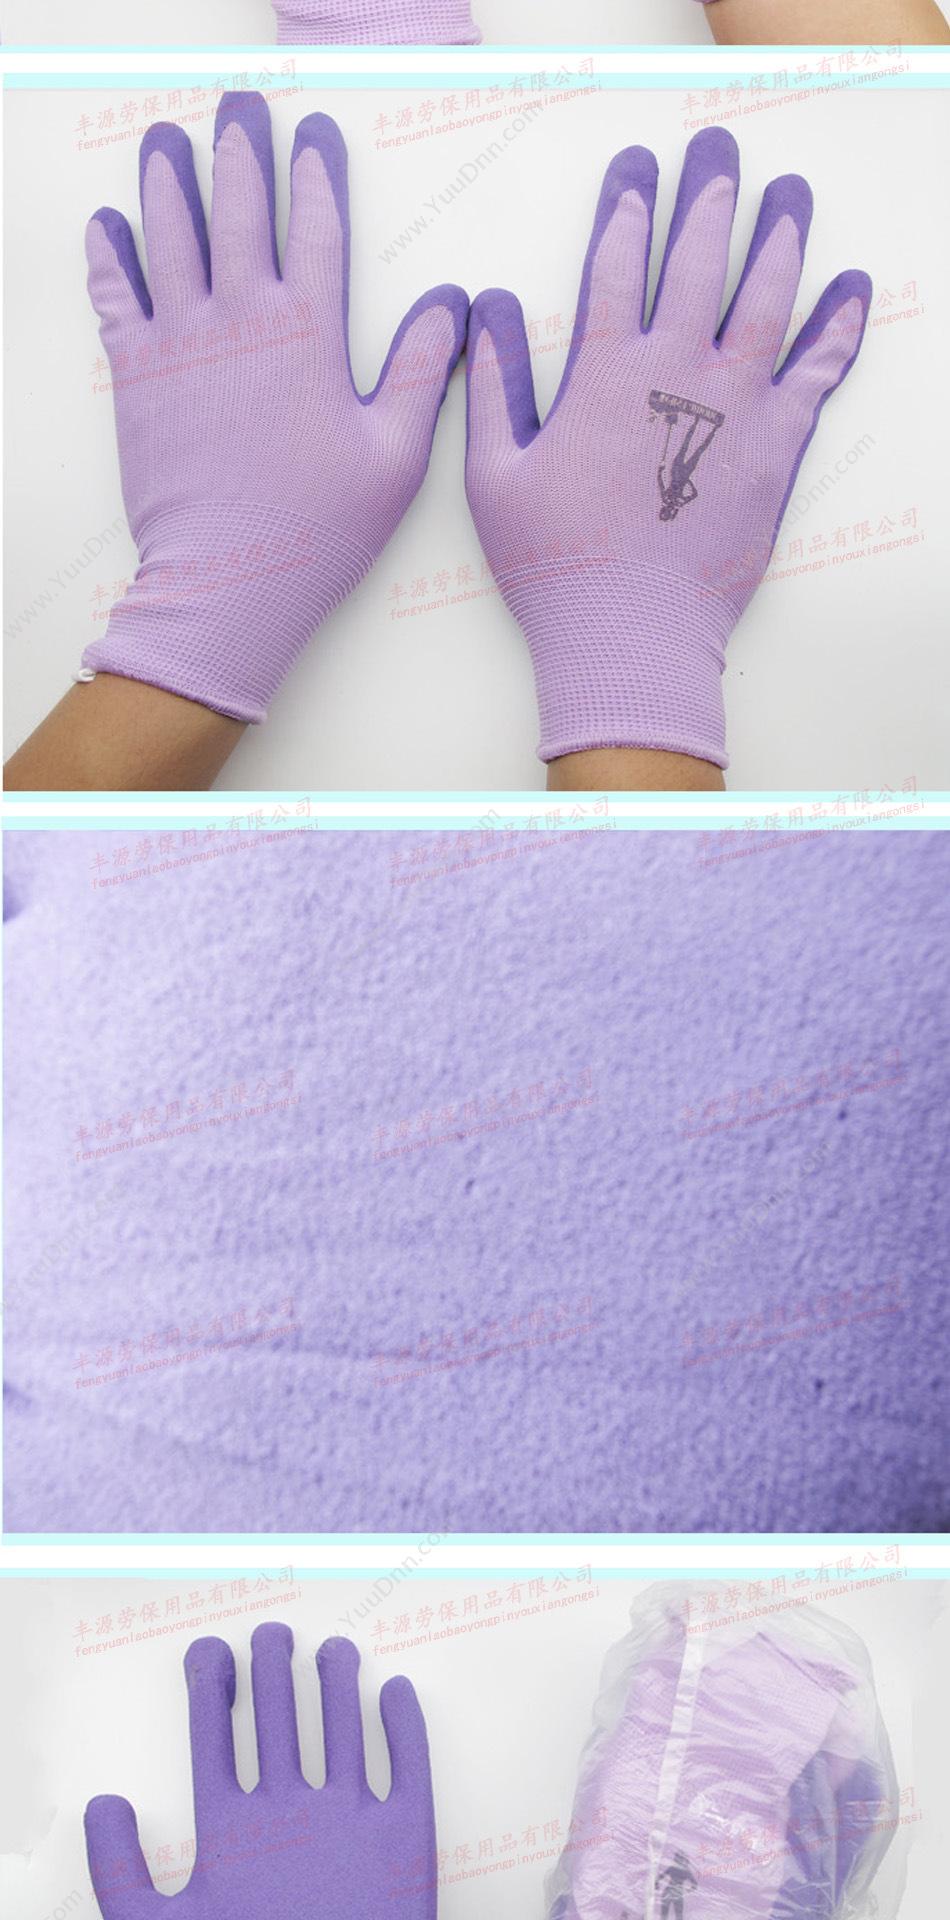 丰源 紫色发泡 通用手套